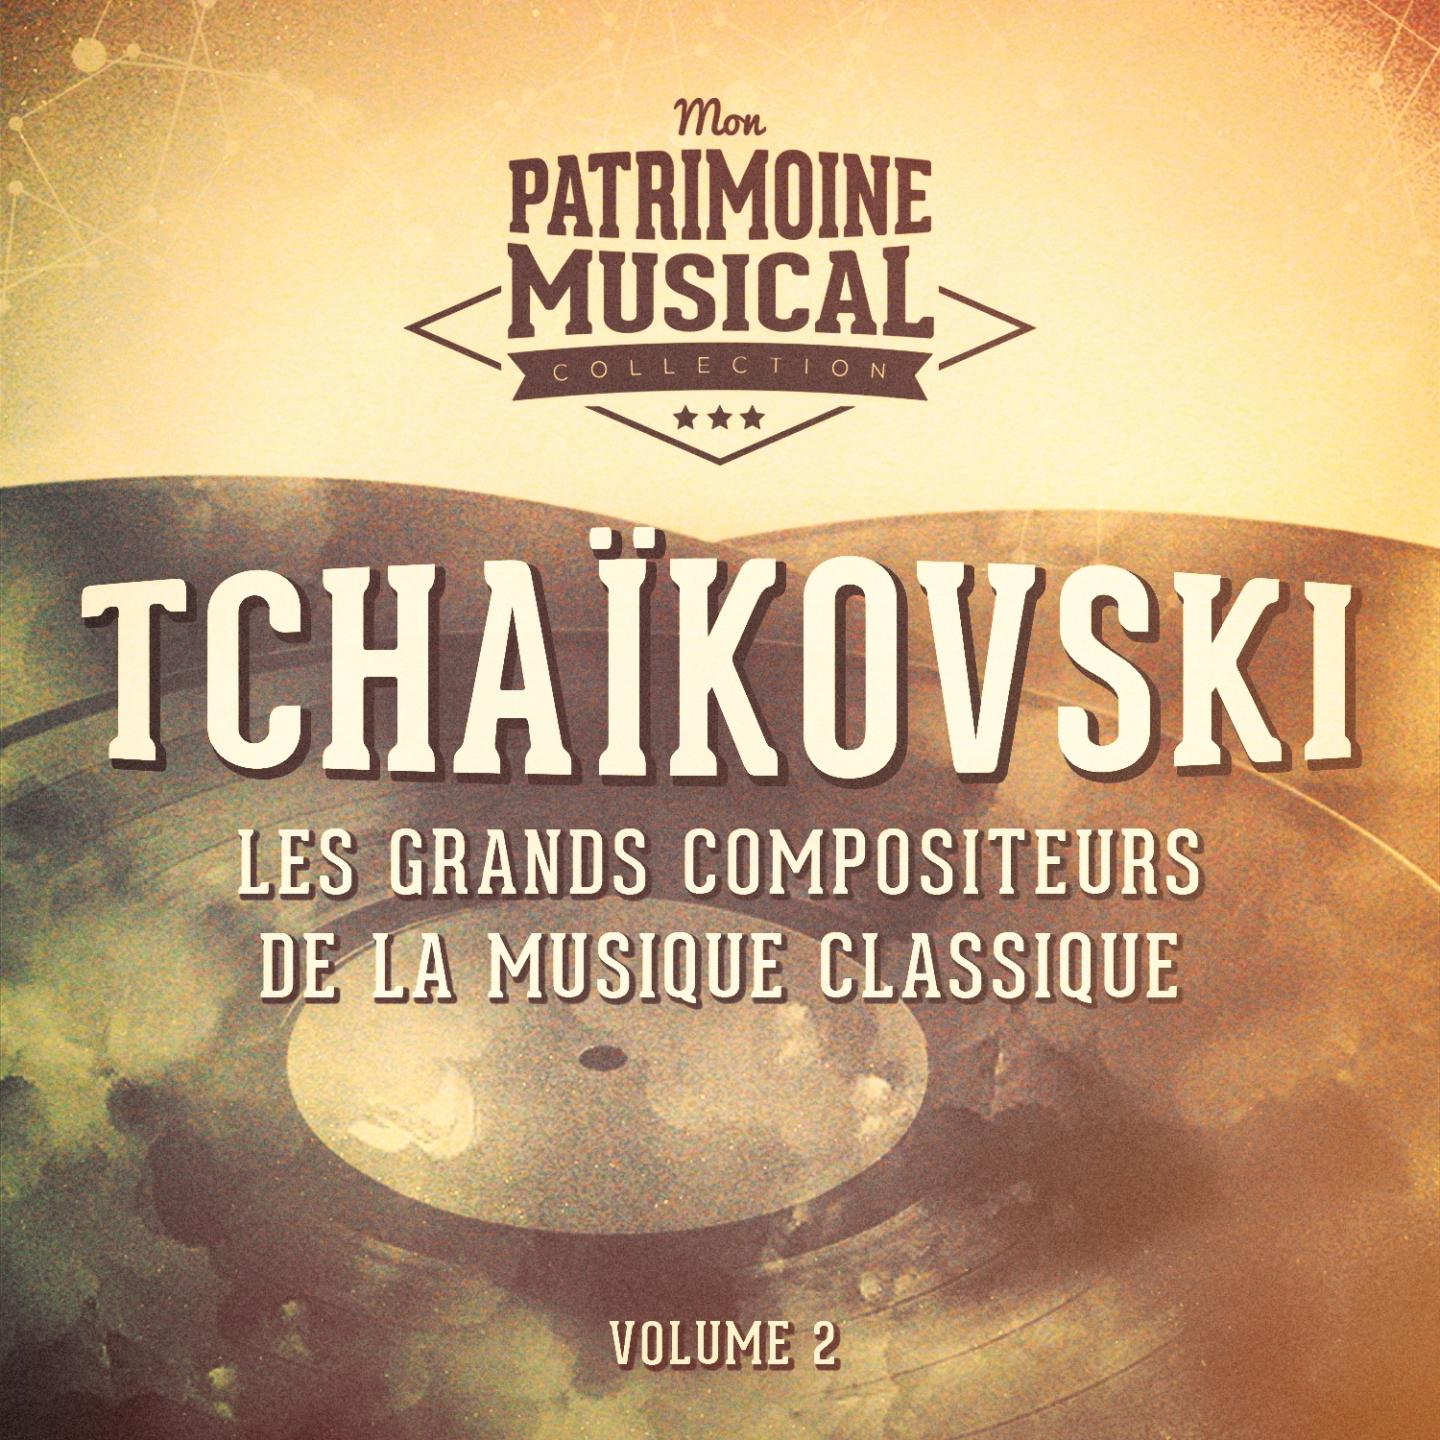 Les grands compositeurs de la musique classique : Piotr Ilitch Tcha kovski, Vol. 2  Cassenoisette   La Belle au bois dormant   Le Lac des cygnes